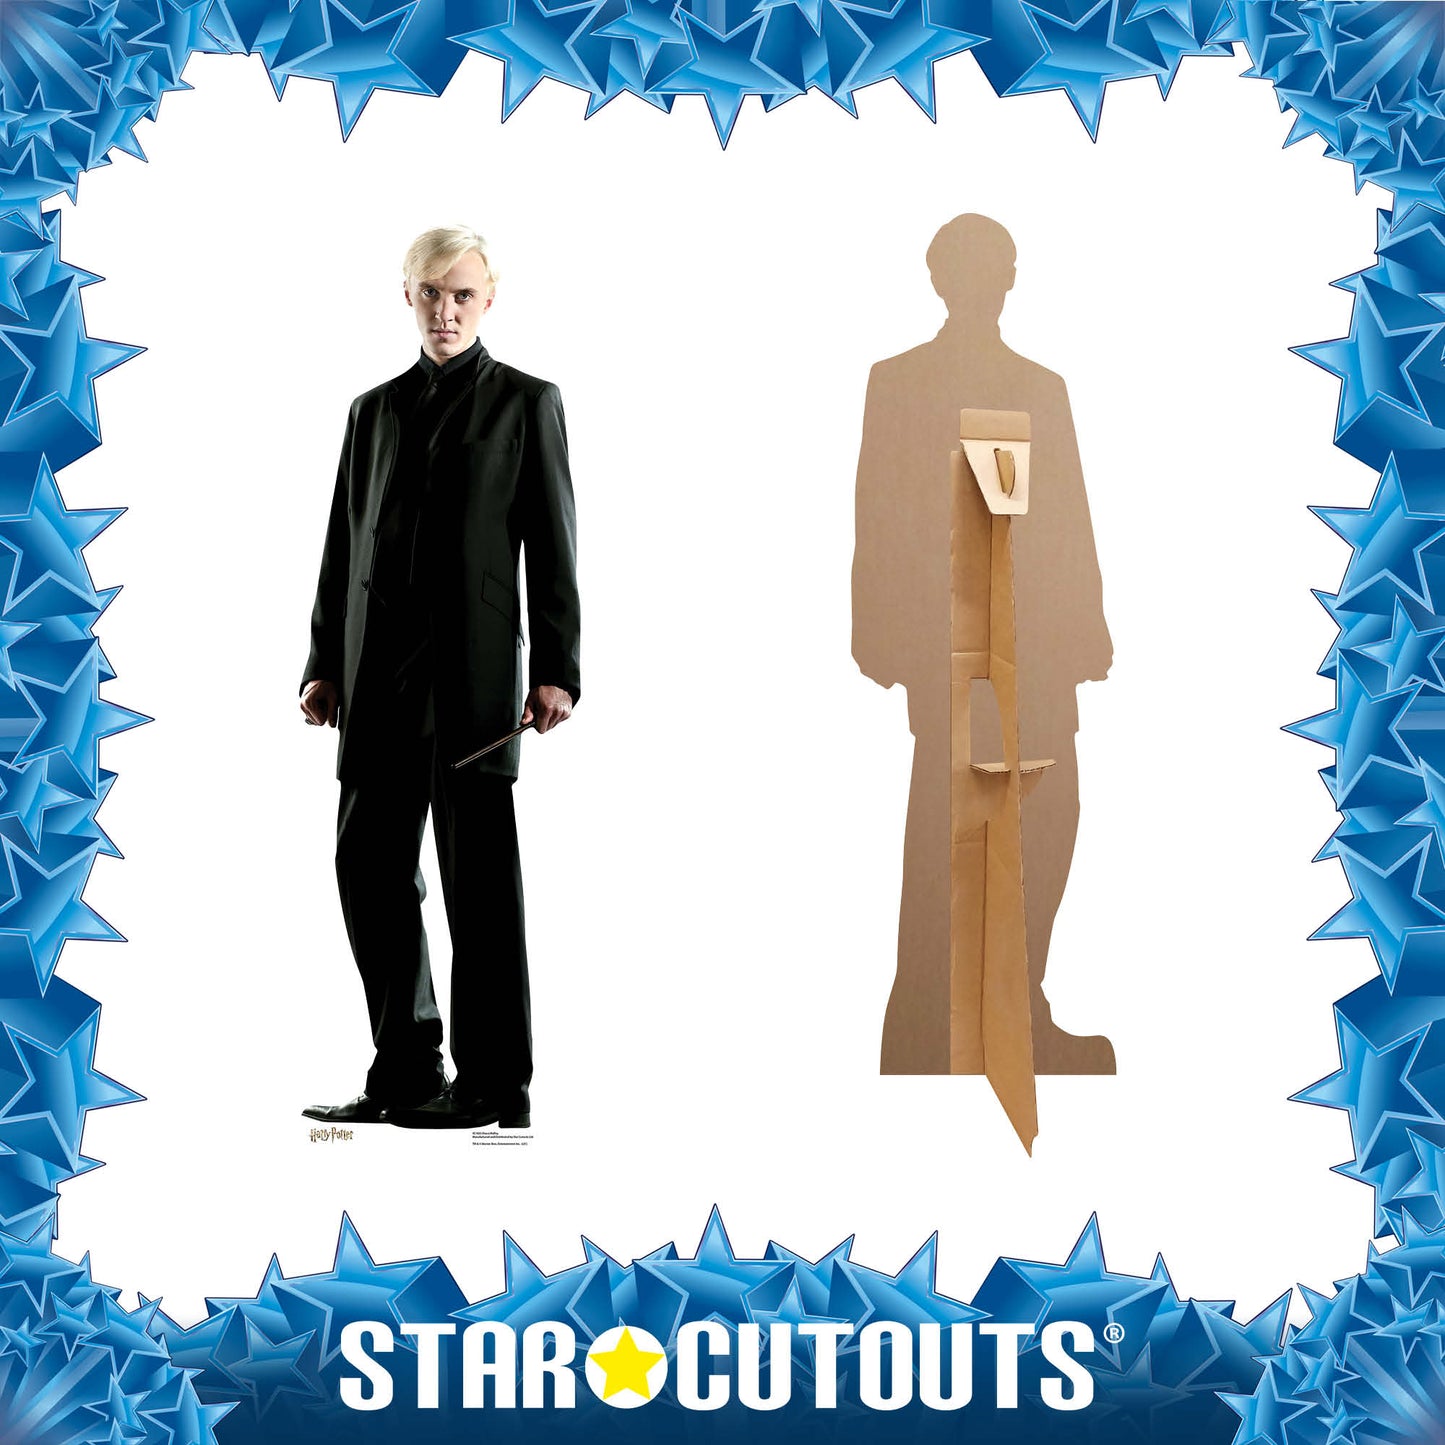 SC1655 Draco Malfoy Star Mini Cardboard Cut Out Height 90cm